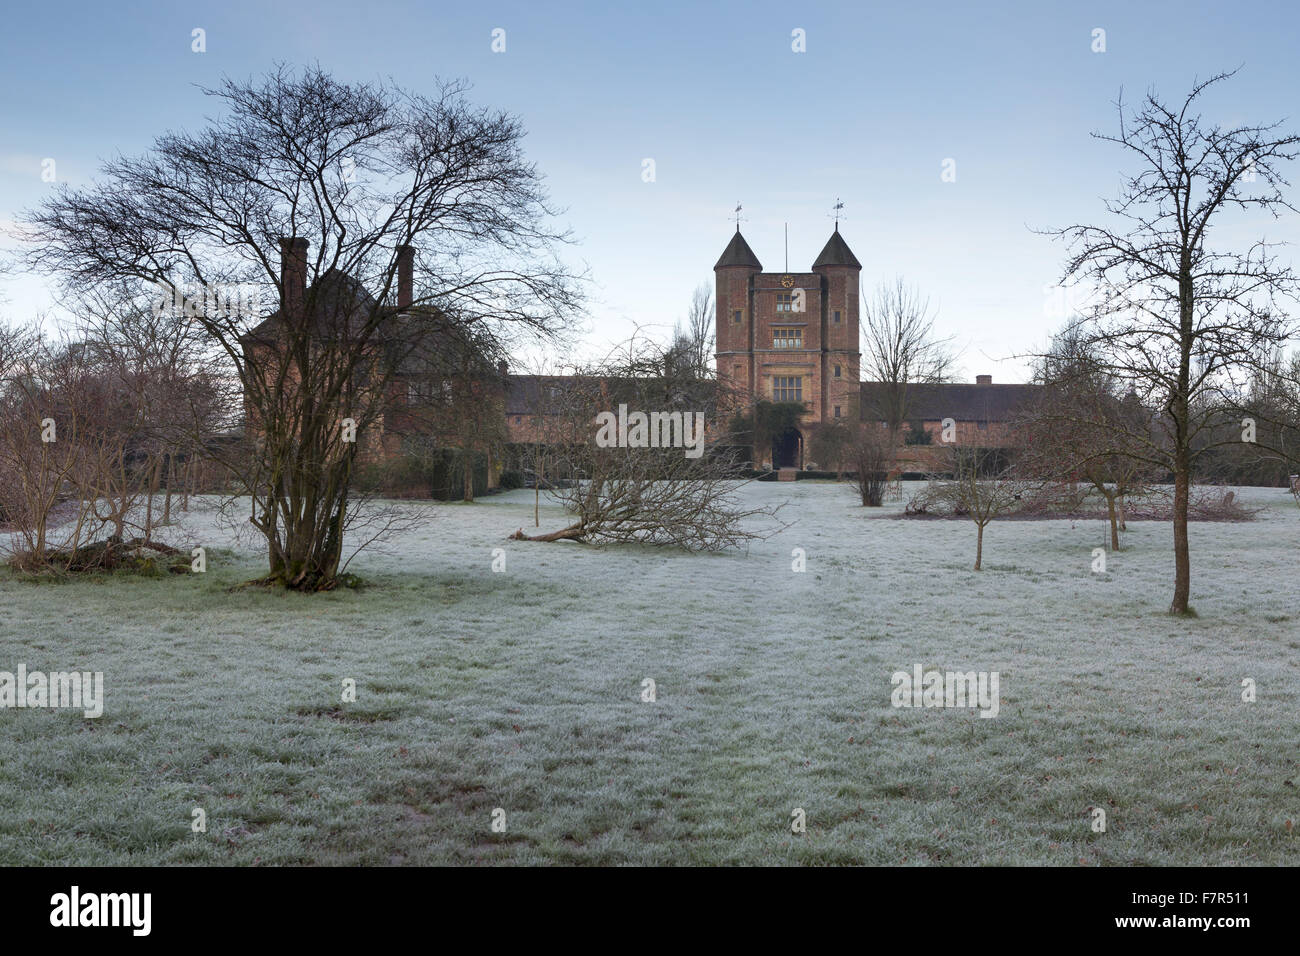 La torre, visto dal frutteto, su una giornata invernale e presso il castello di Sissinghurst, Kent. Vita Sackville-West e Harold Nicolson ha creato un famoso Giardino di Sissinghurst, che abbraccia ogni stagione. Foto Stock